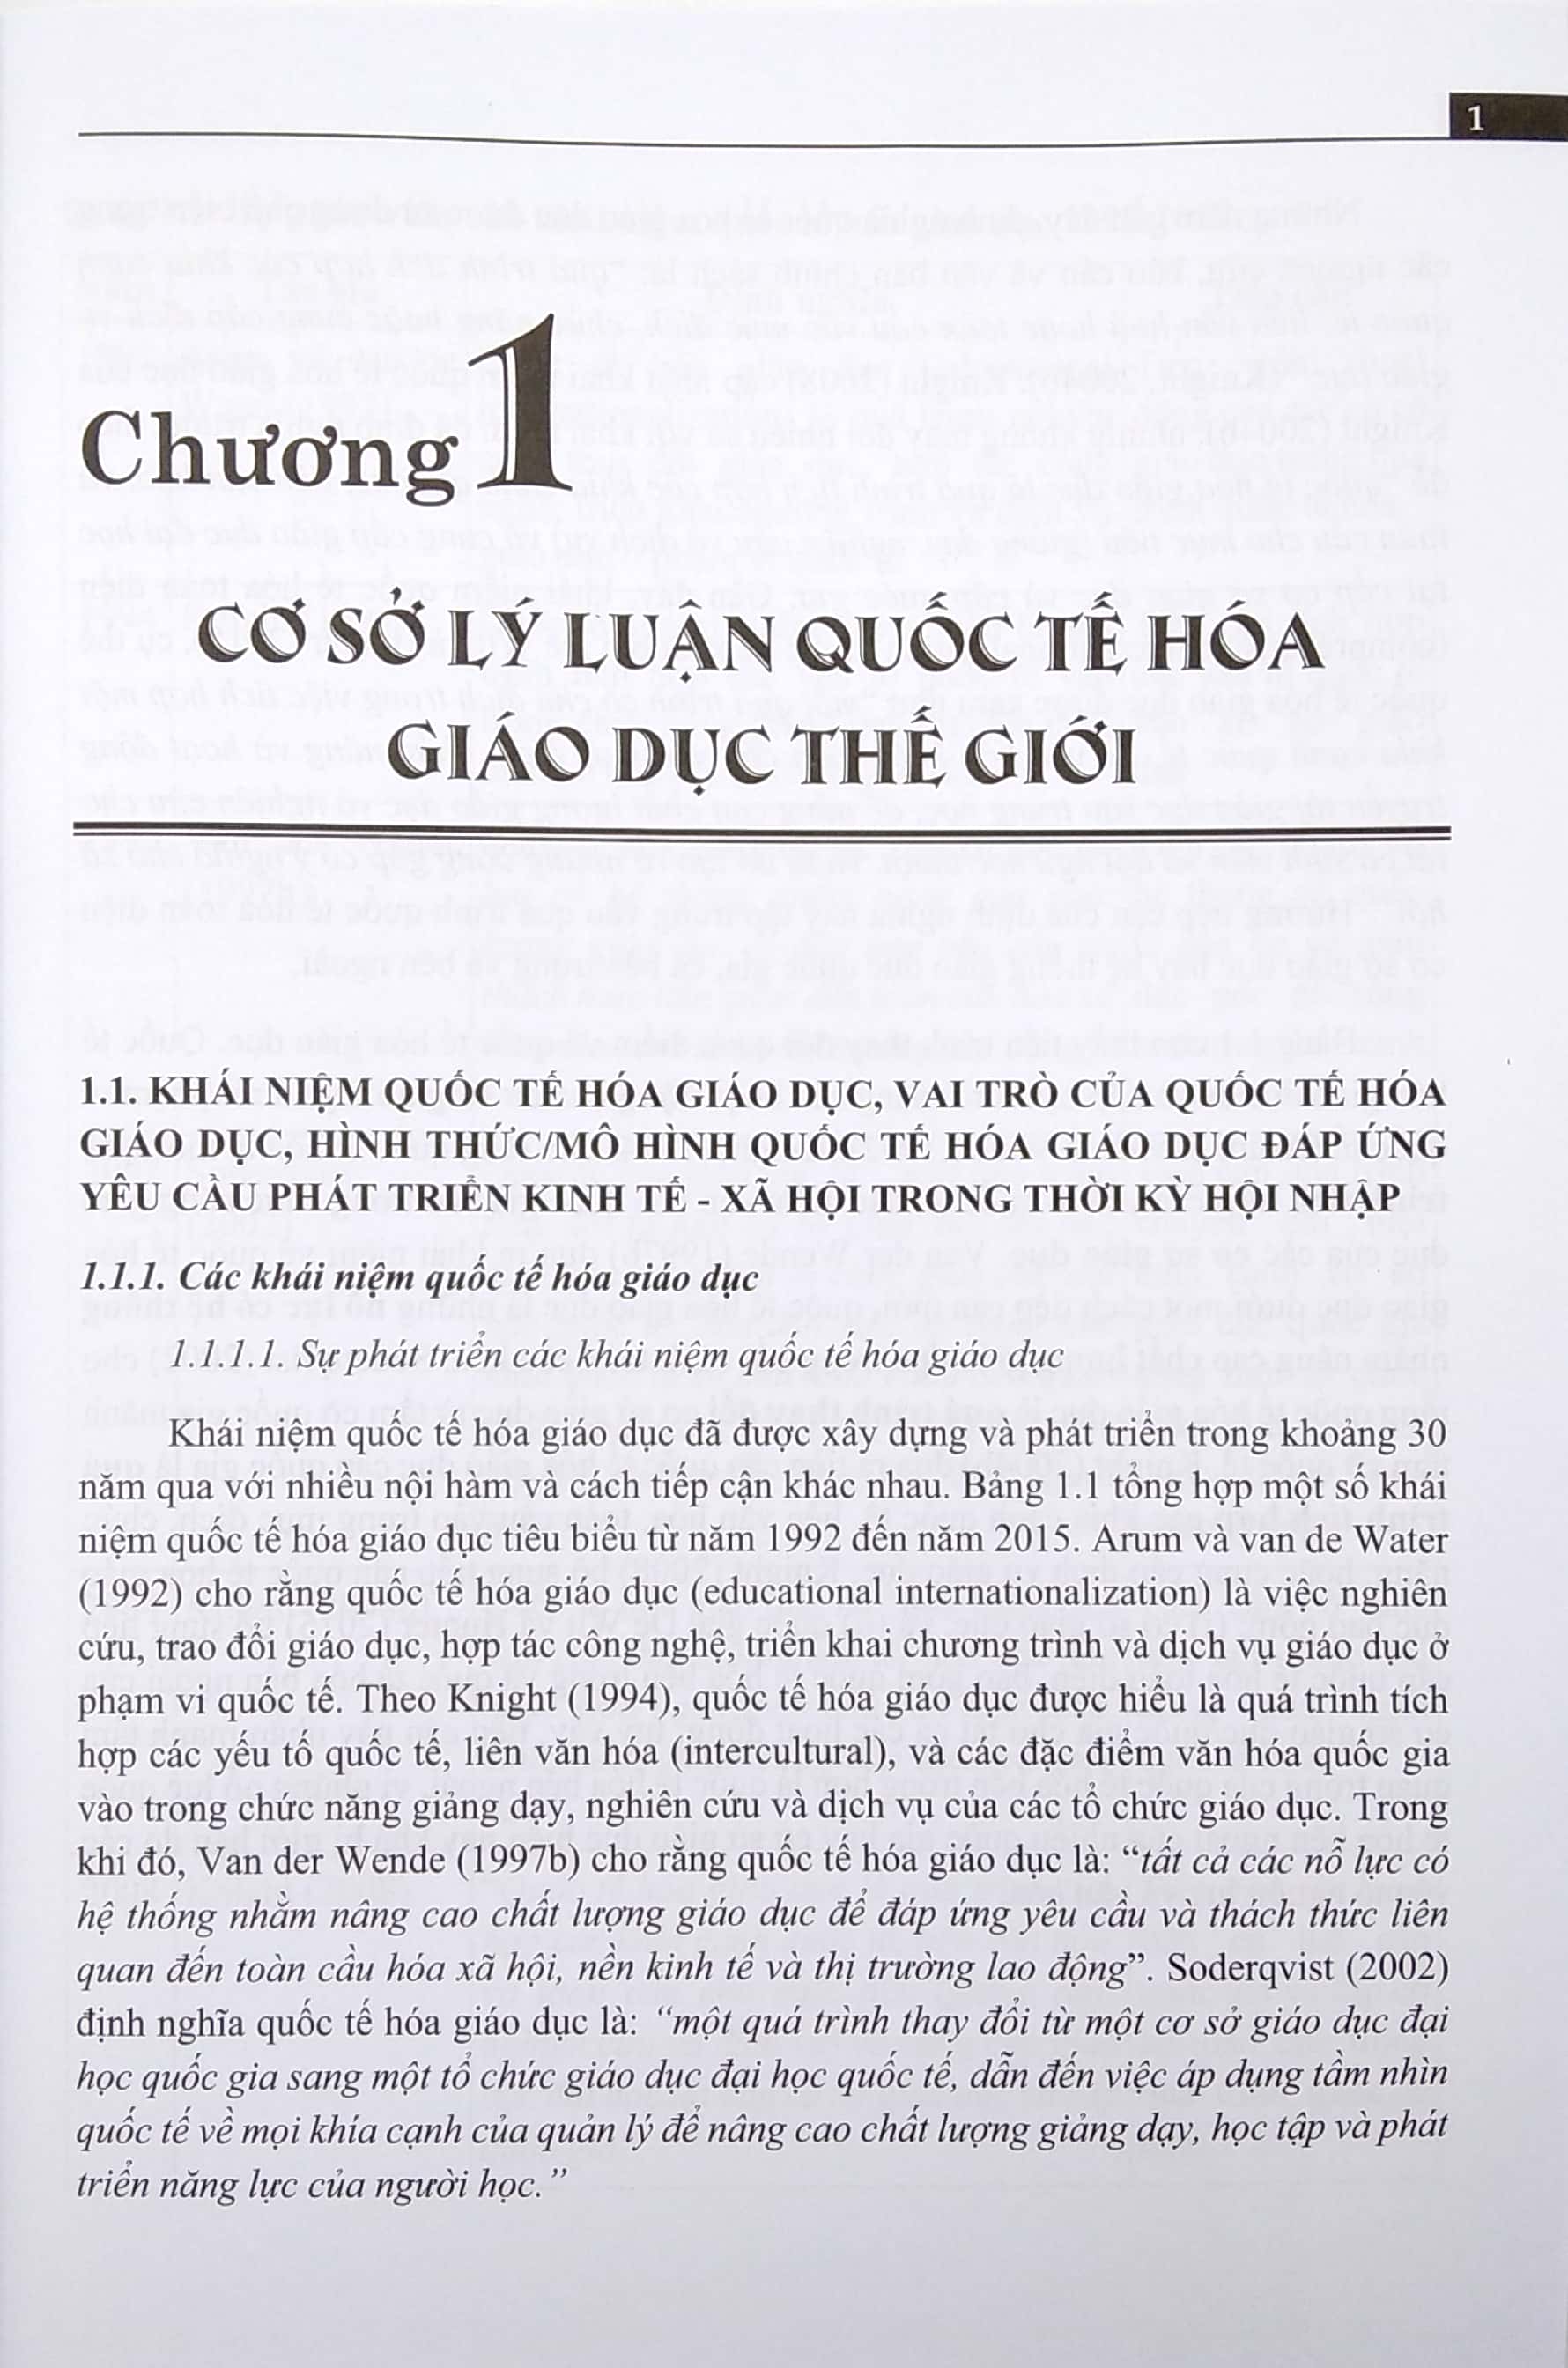 Quốc Tế Hóa Giáo Dục: Thông Lệ Thế Giới Và Bằng Chứng Giáo Dục Đại Học Việt Nam PDF